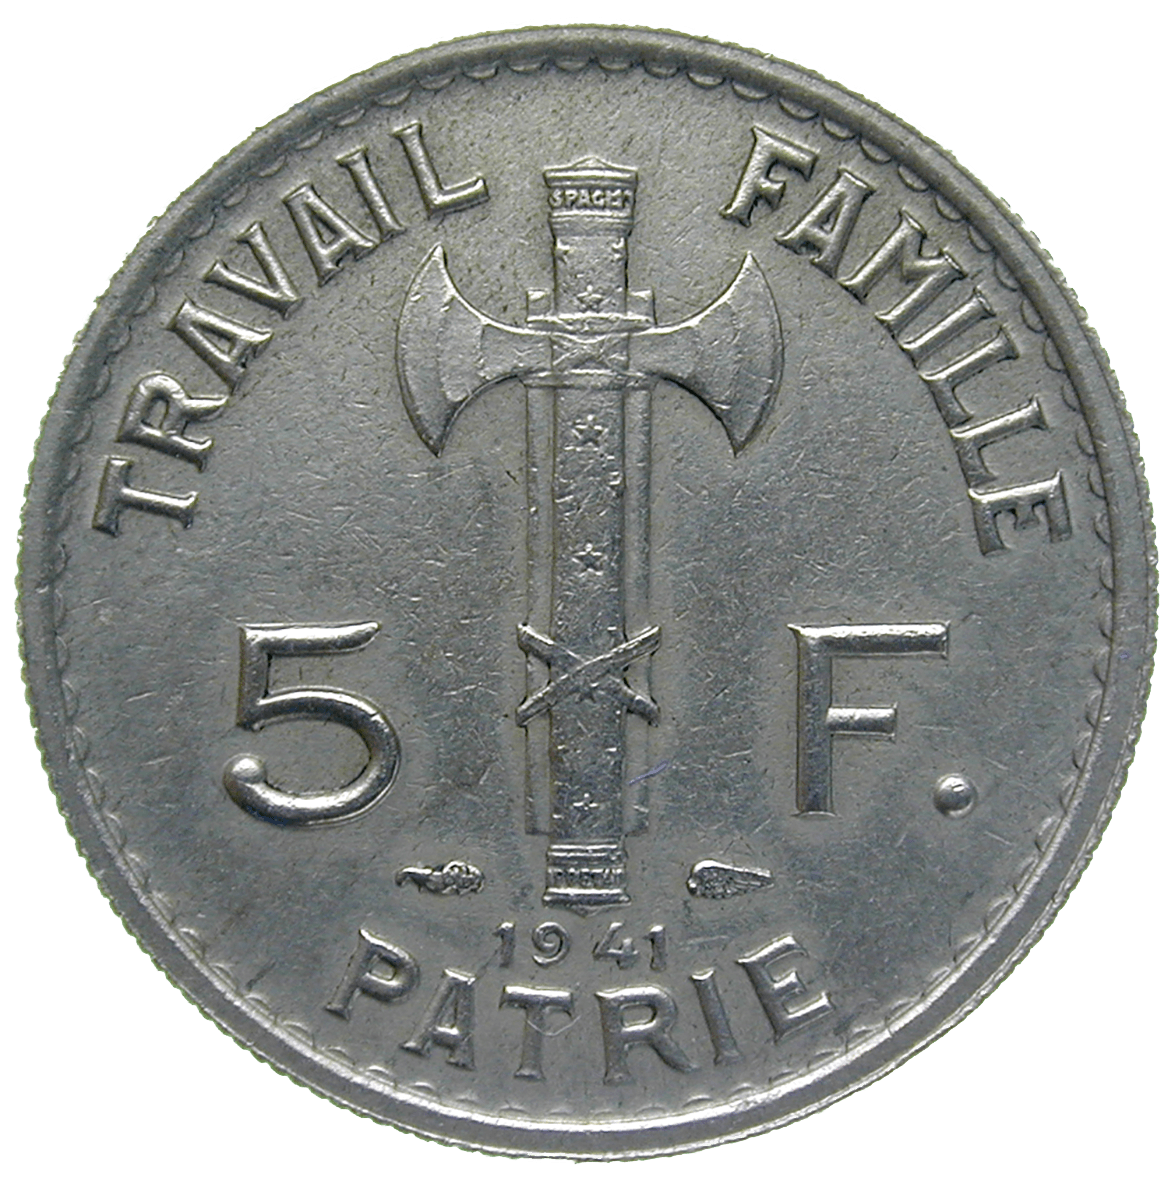 Frankreich, Etat Français, Philippe Pétain, 5 Francs 1941 (reverse)